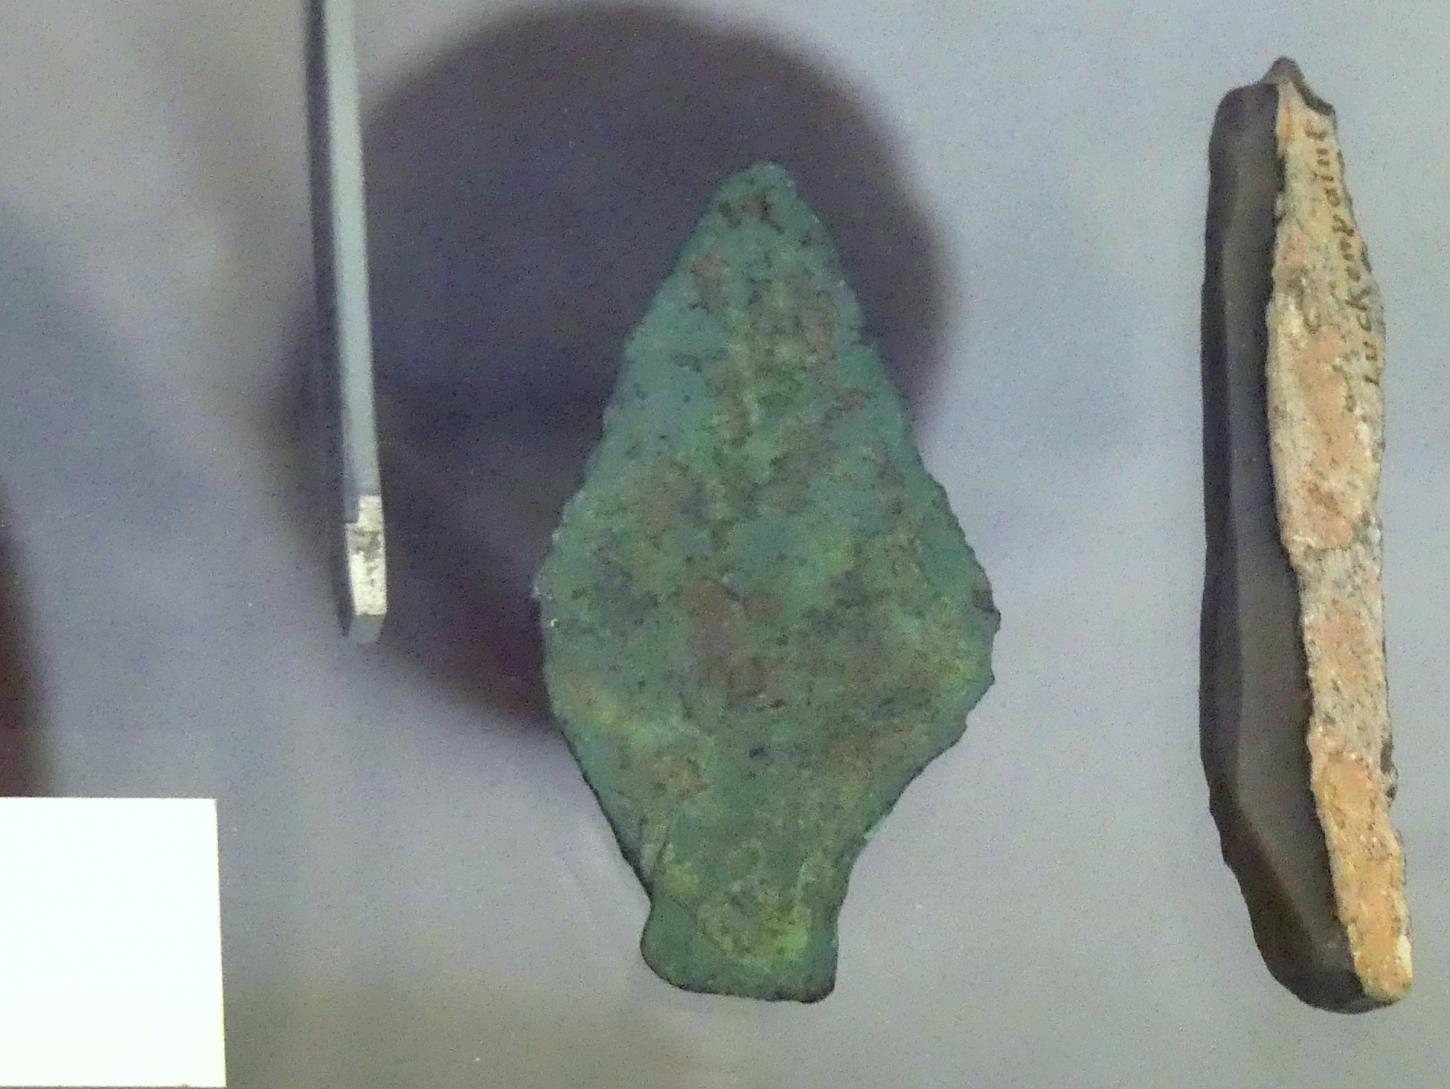 Kupferdolch, Endneolithikum, 2800 - 1700 v. Chr.